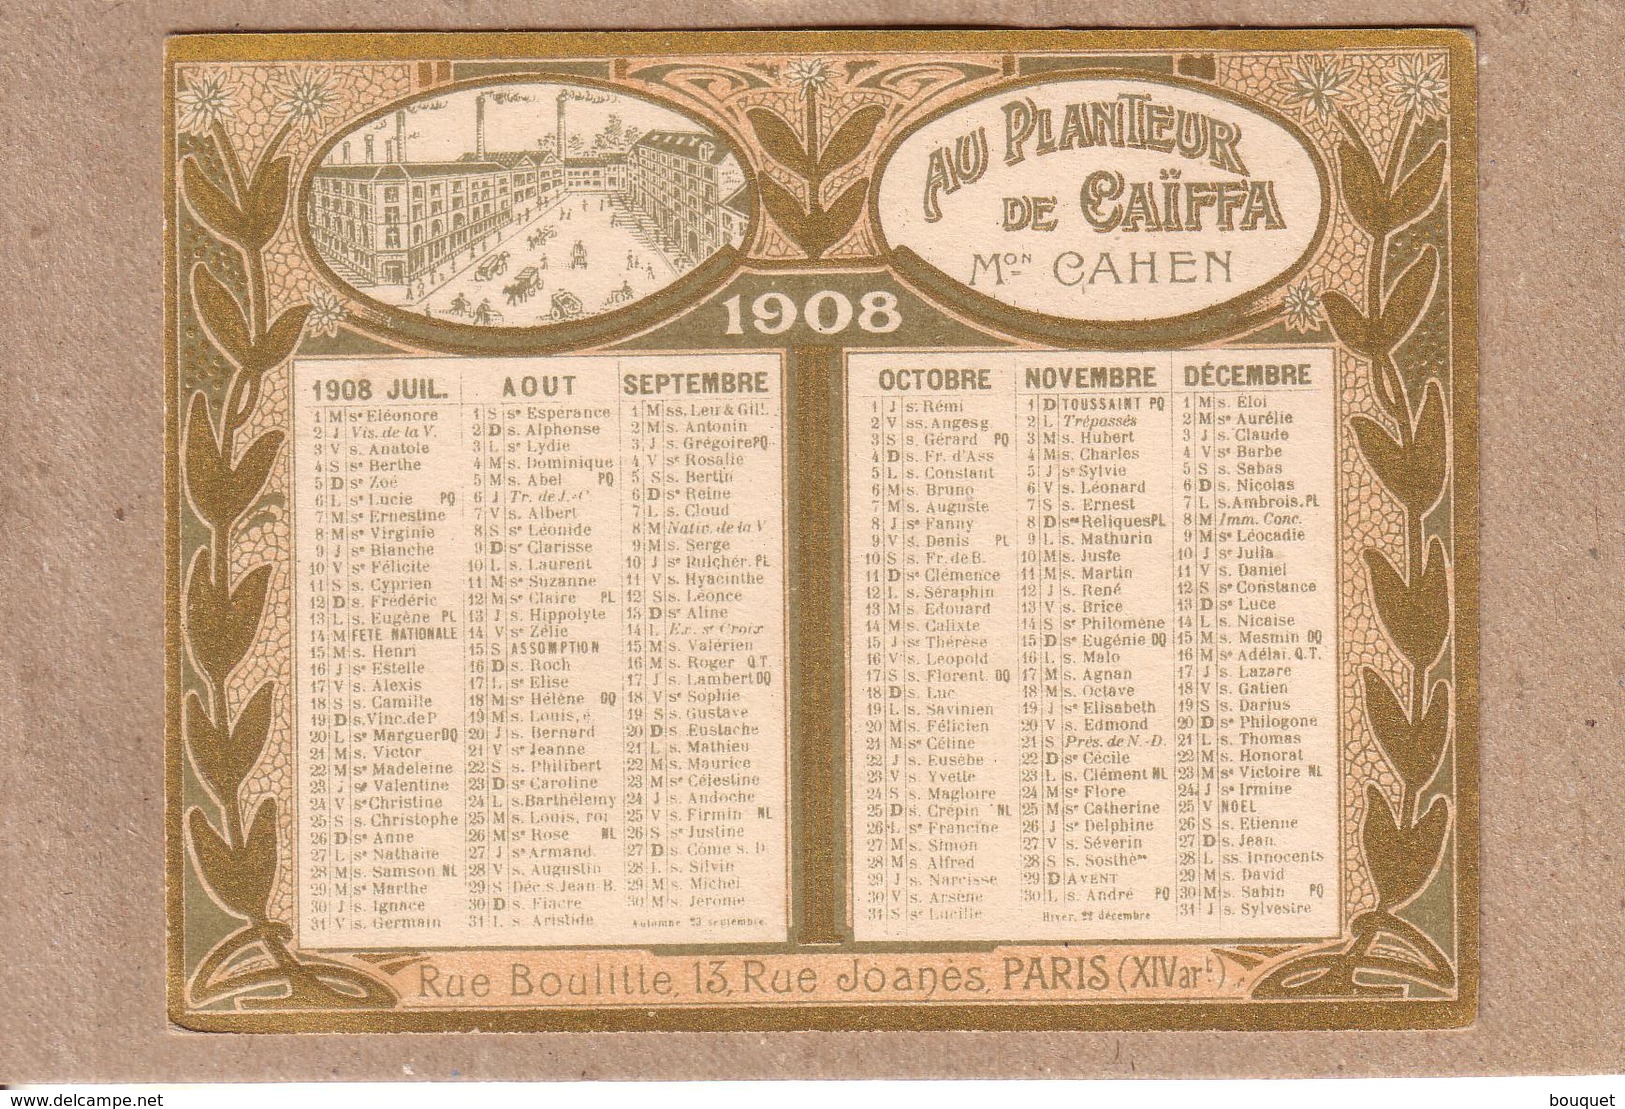 CALENDRIERS - CALENDRIER PUBLICITE " AU PLANTEUR DE CAÏFFA " , MAISON CAHEN , PARIS - 1908 - Petit Format : 1901-20